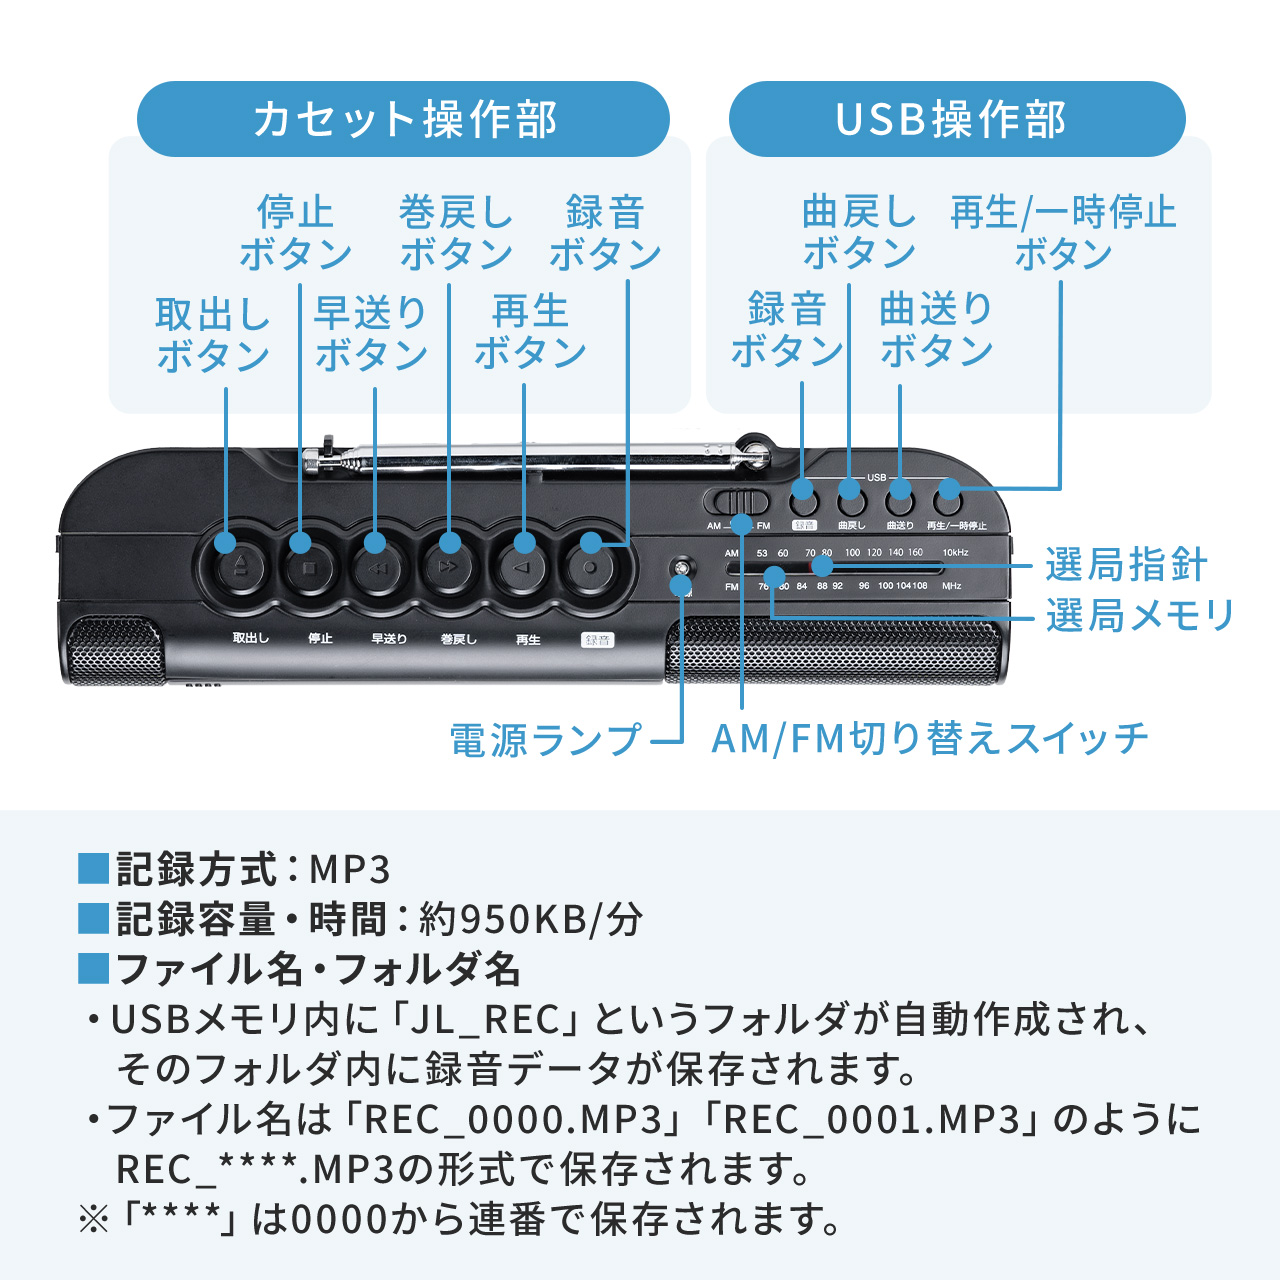 【ビジネス応援セール】カセット変換プレーヤー デジタル保存 AC電源 乾電池 USB保存 AM/FMラジオ機能 ラジカセ 400-MEDI043